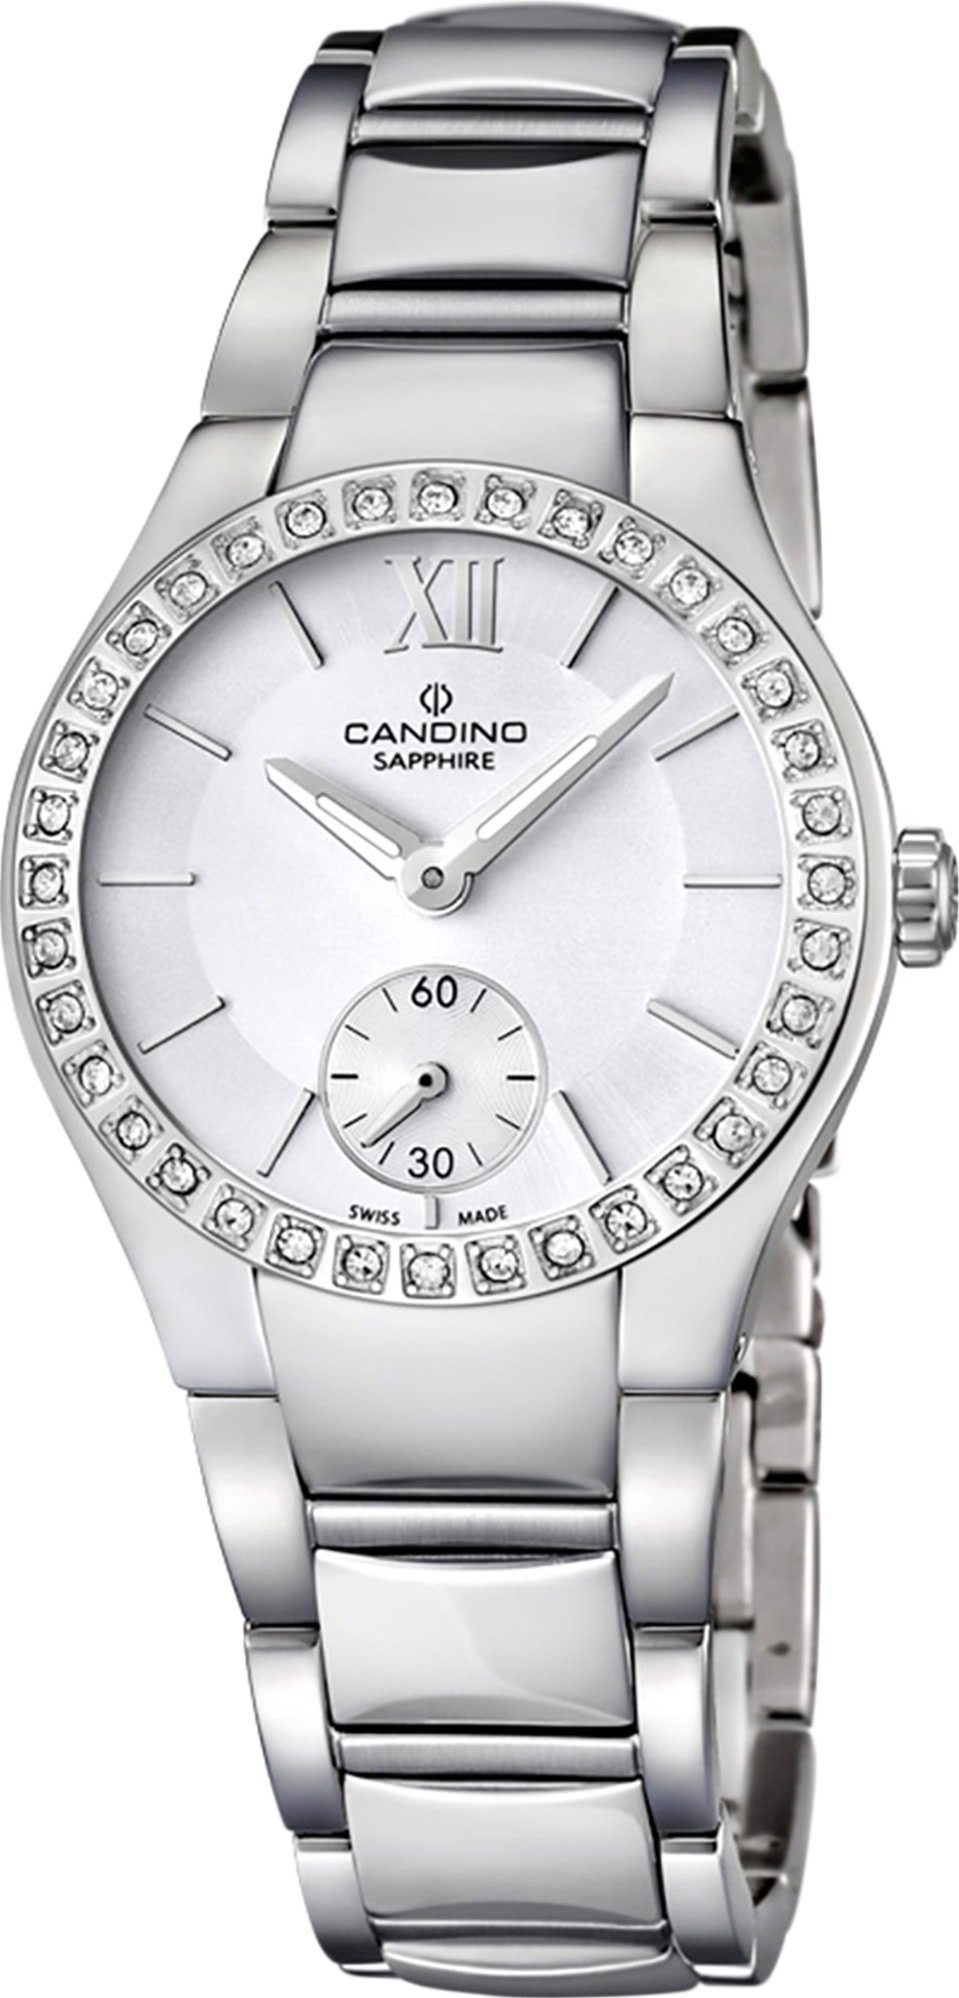 Quarzuhr Armbanduhr Damen Uhr Candino C4537/1, Candino Edelstahlarmband Damen Luxus rund, Quarzwerk silber,